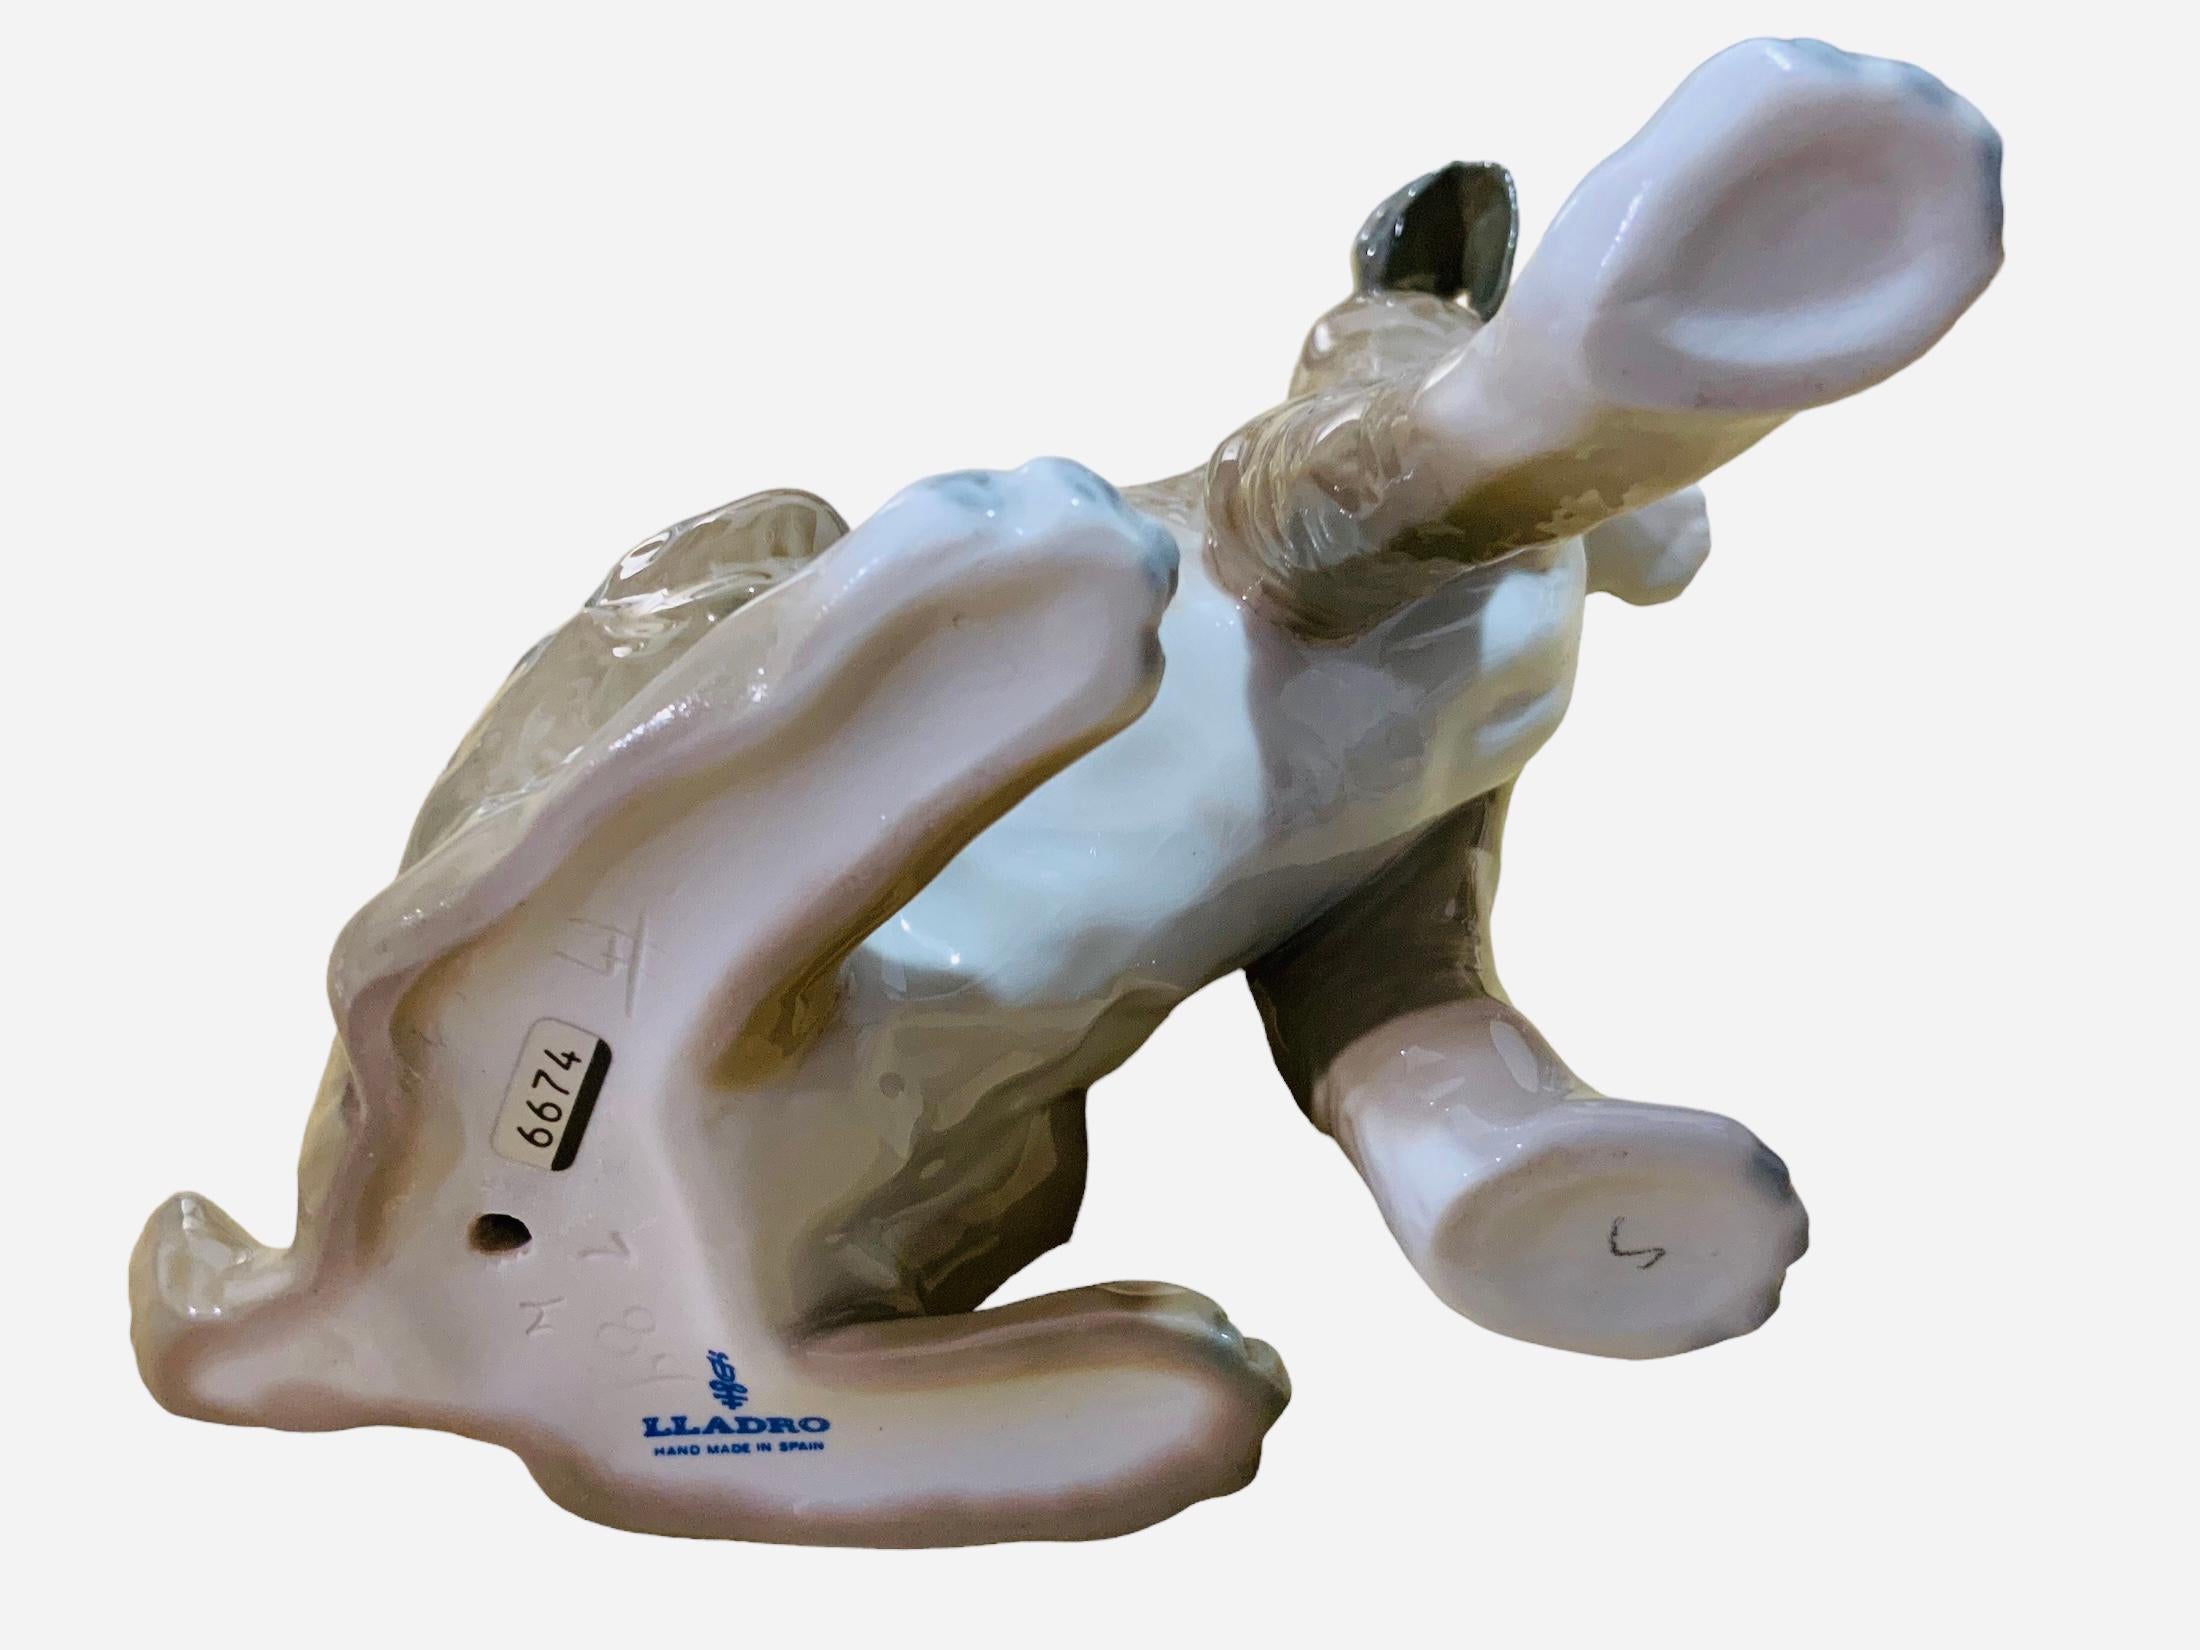 Il s'agit d'une figurine en porcelaine de Lladro représentant un chien, œuvre de Fulgencio Garcia. Il représente un grand Setter peint à la main et plein de détails, debout, avec un regard très expressif. Le poinçon de Lladro  se trouve sous la